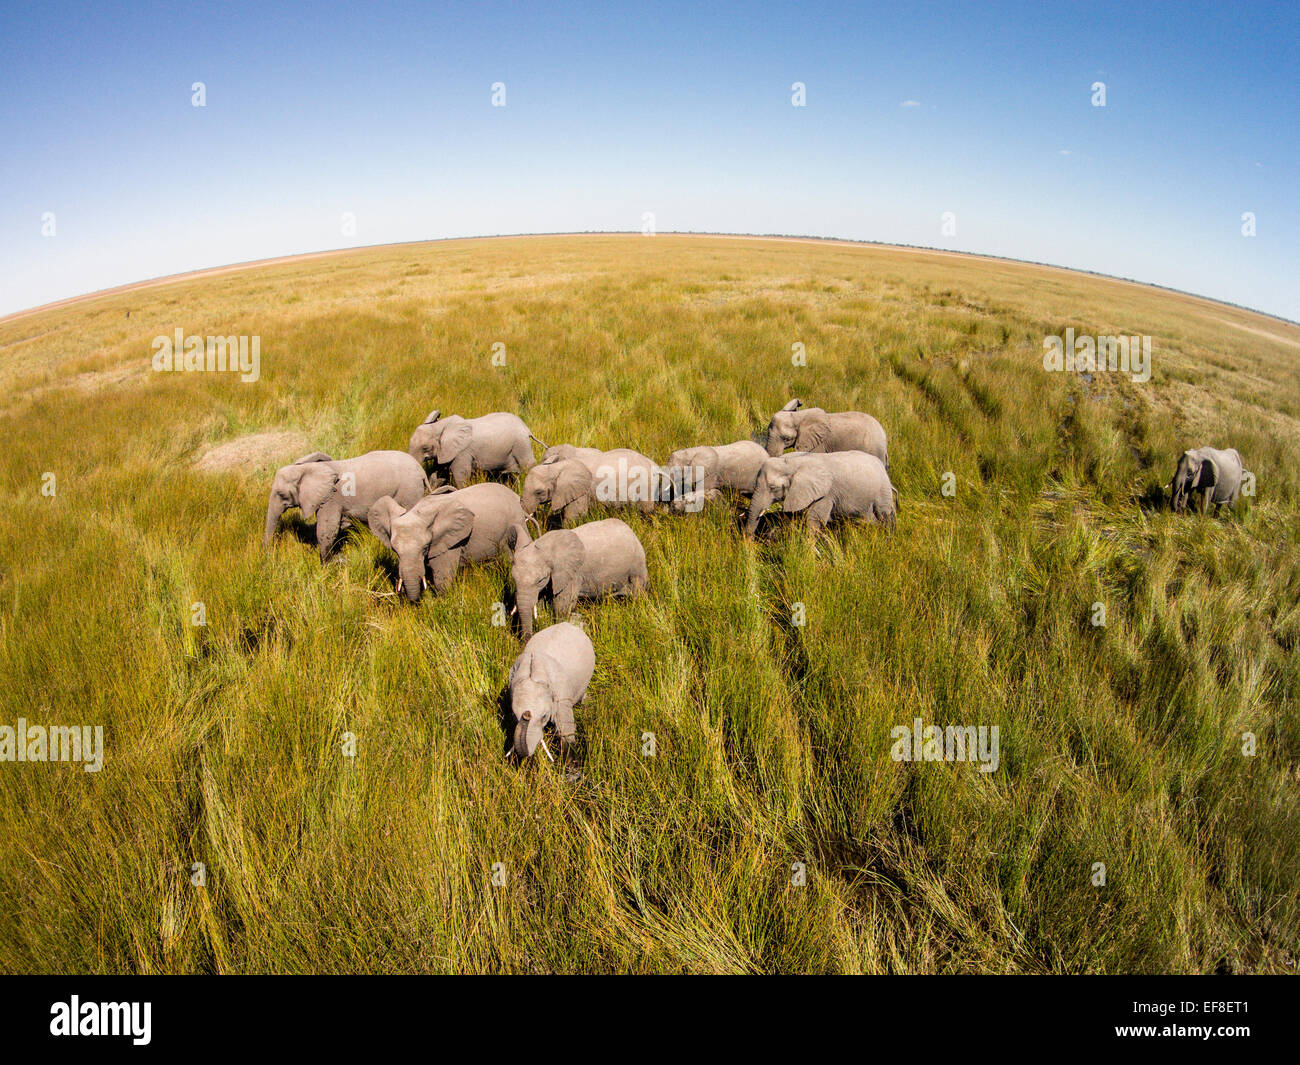 L'Afrique, Botswana, Chobe National Park, vue aérienne d'éléphants (Loxodonta africana) Balade Savuti Marsh's wetlands en Lozère Banque D'Images